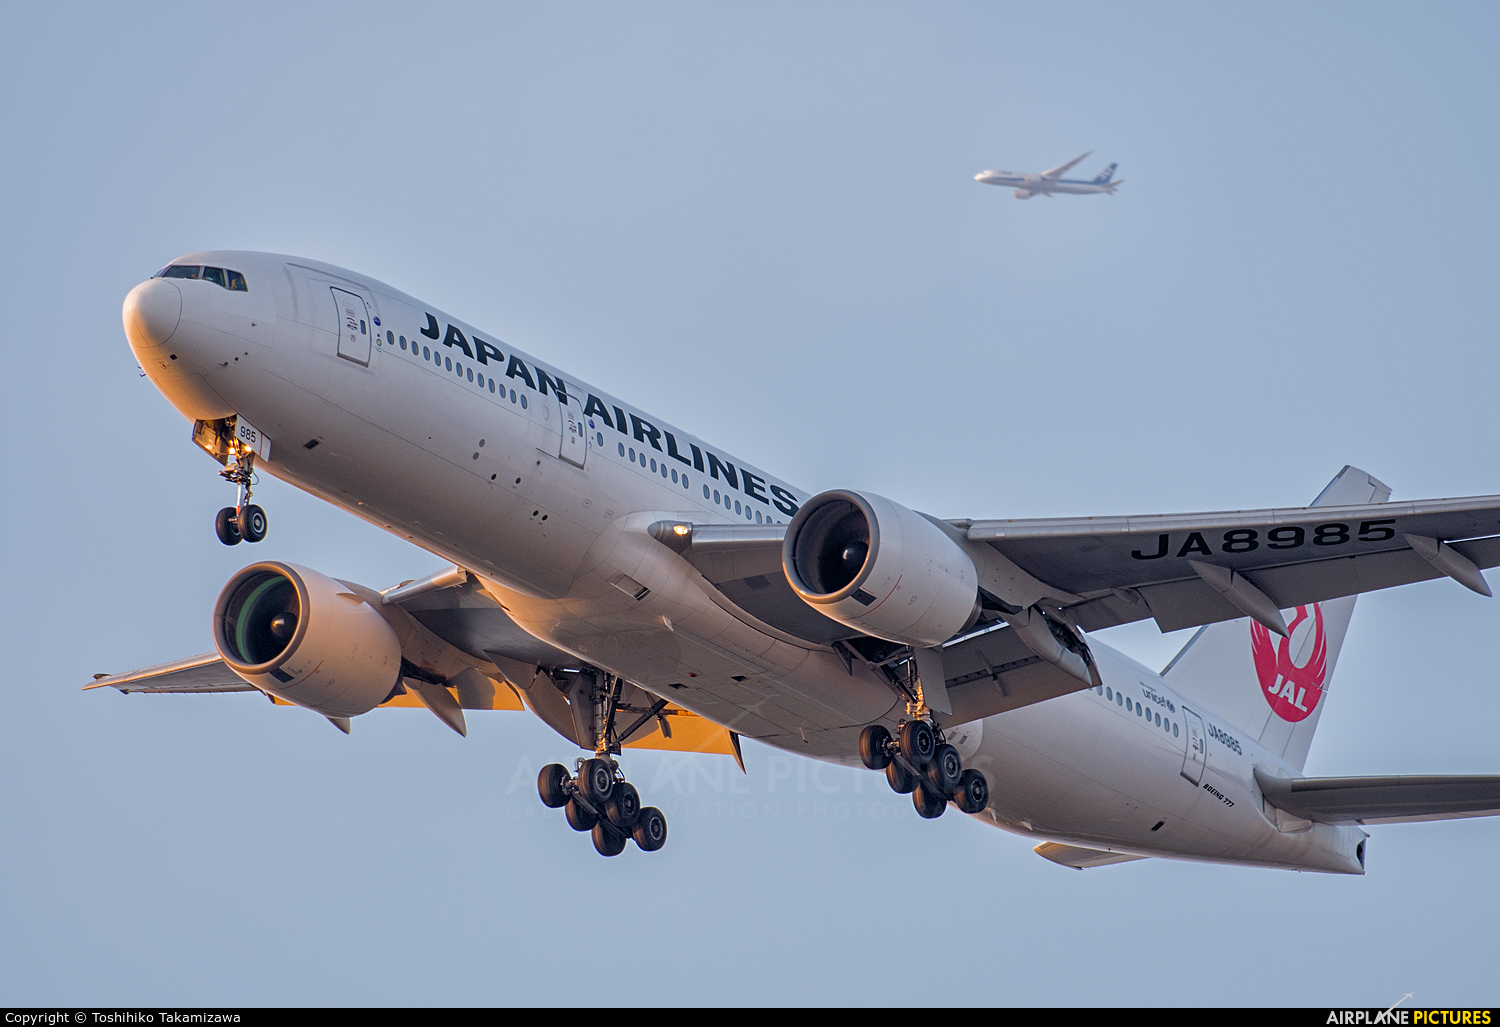 JAL - Japan Airlines JA8985 aircraft at Tokyo - Haneda Intl